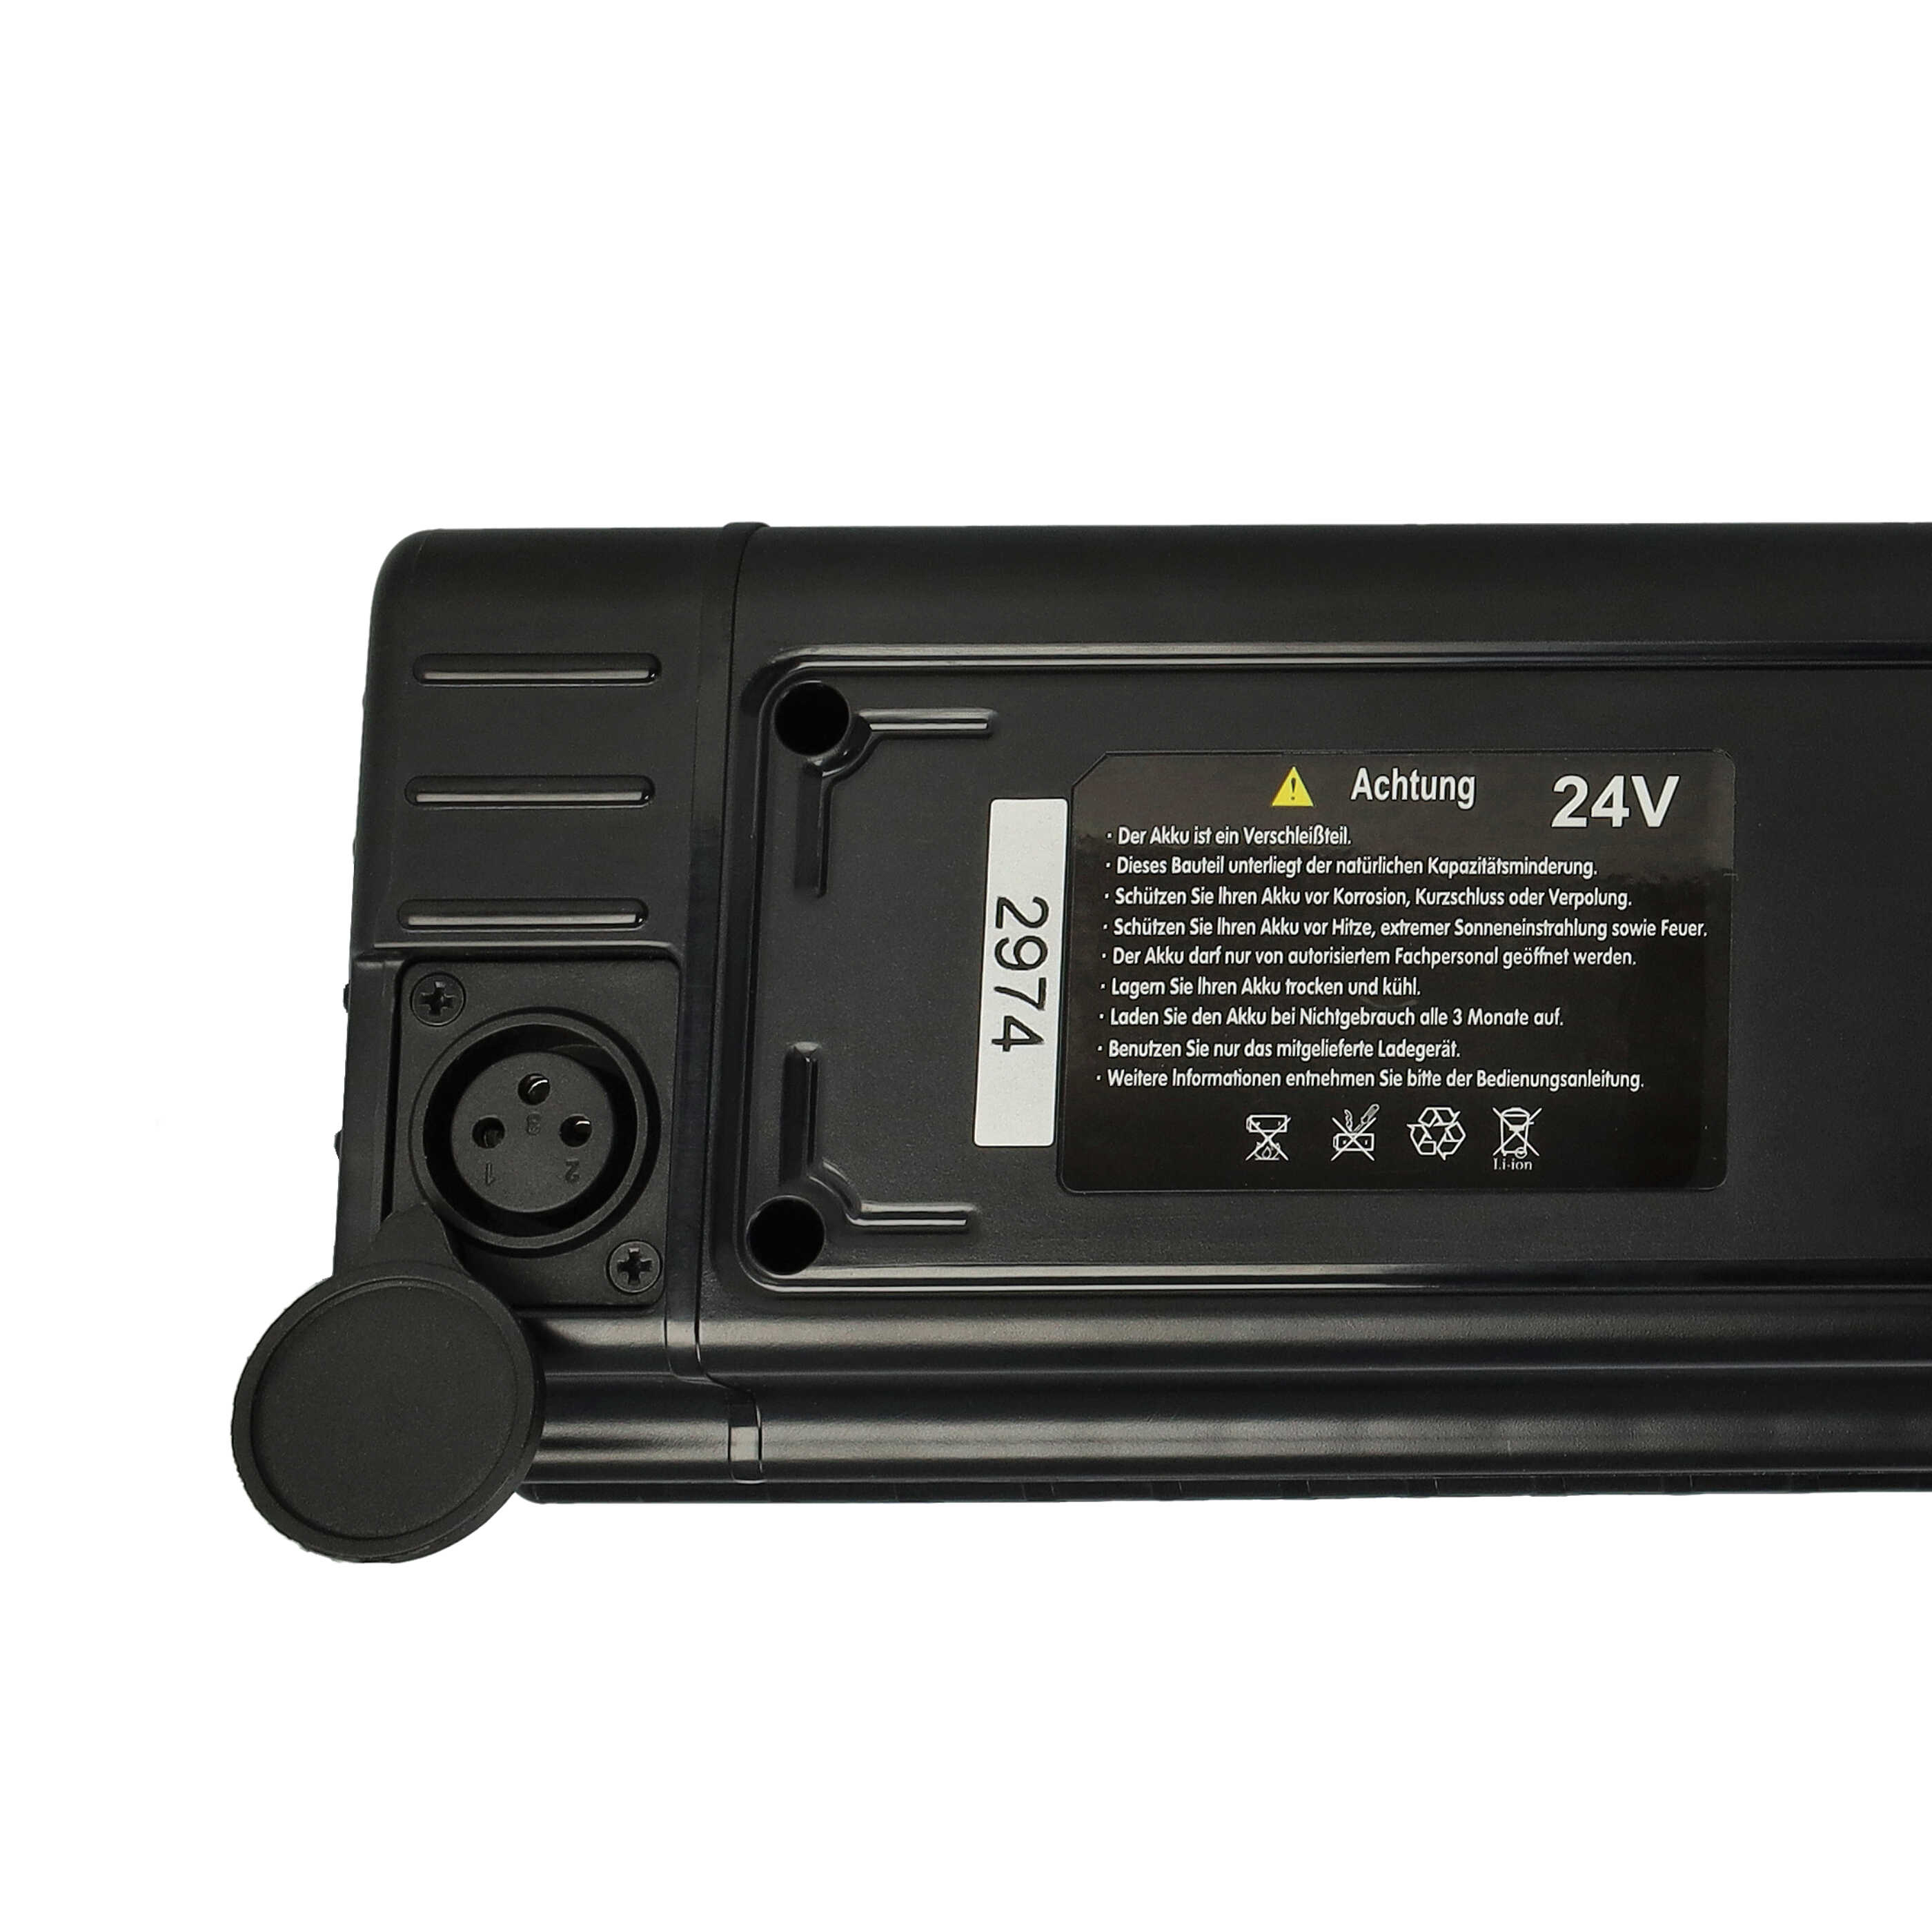 Akumulator do roweru zam. Samsung SDI 24V - 11600 mAh, 24 V, czarny